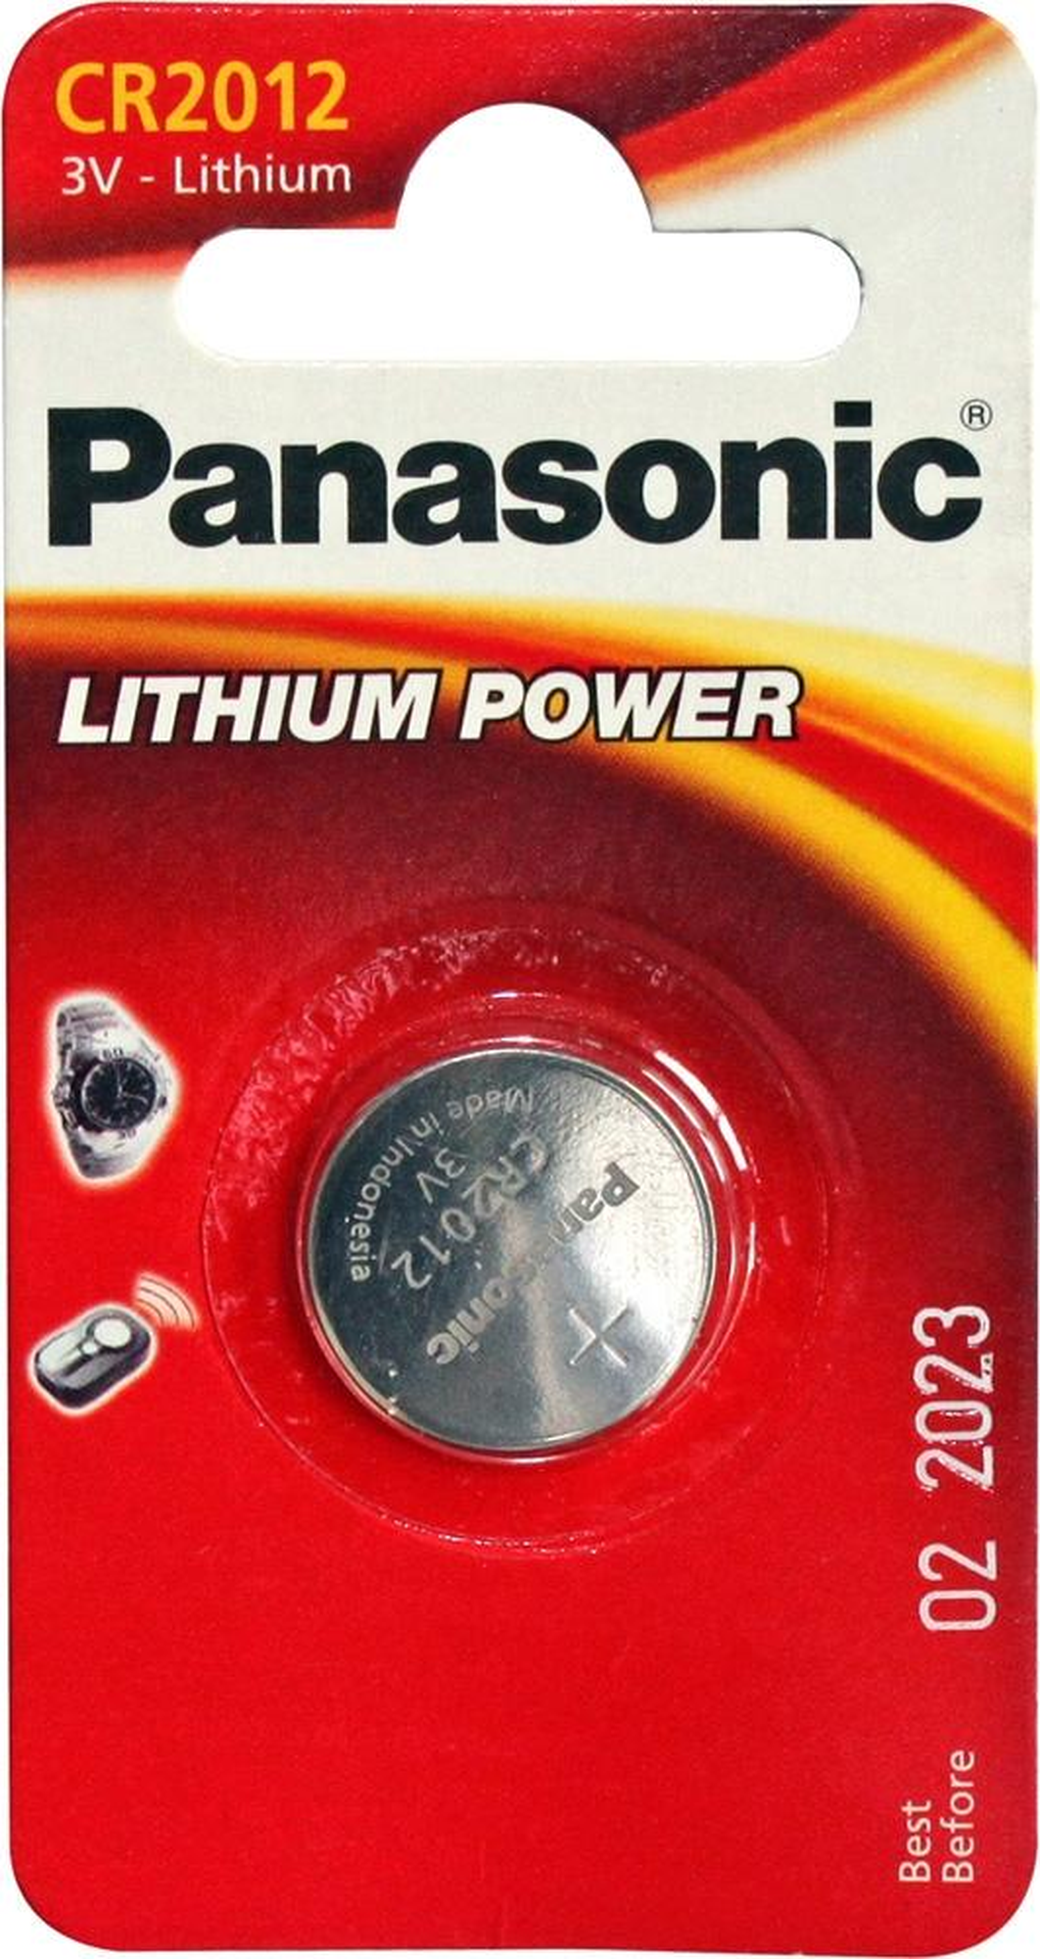 Батарейки Panasonic CR-2012EL/1B дисковые литиевые Lithium Power в блистере 1шт фото